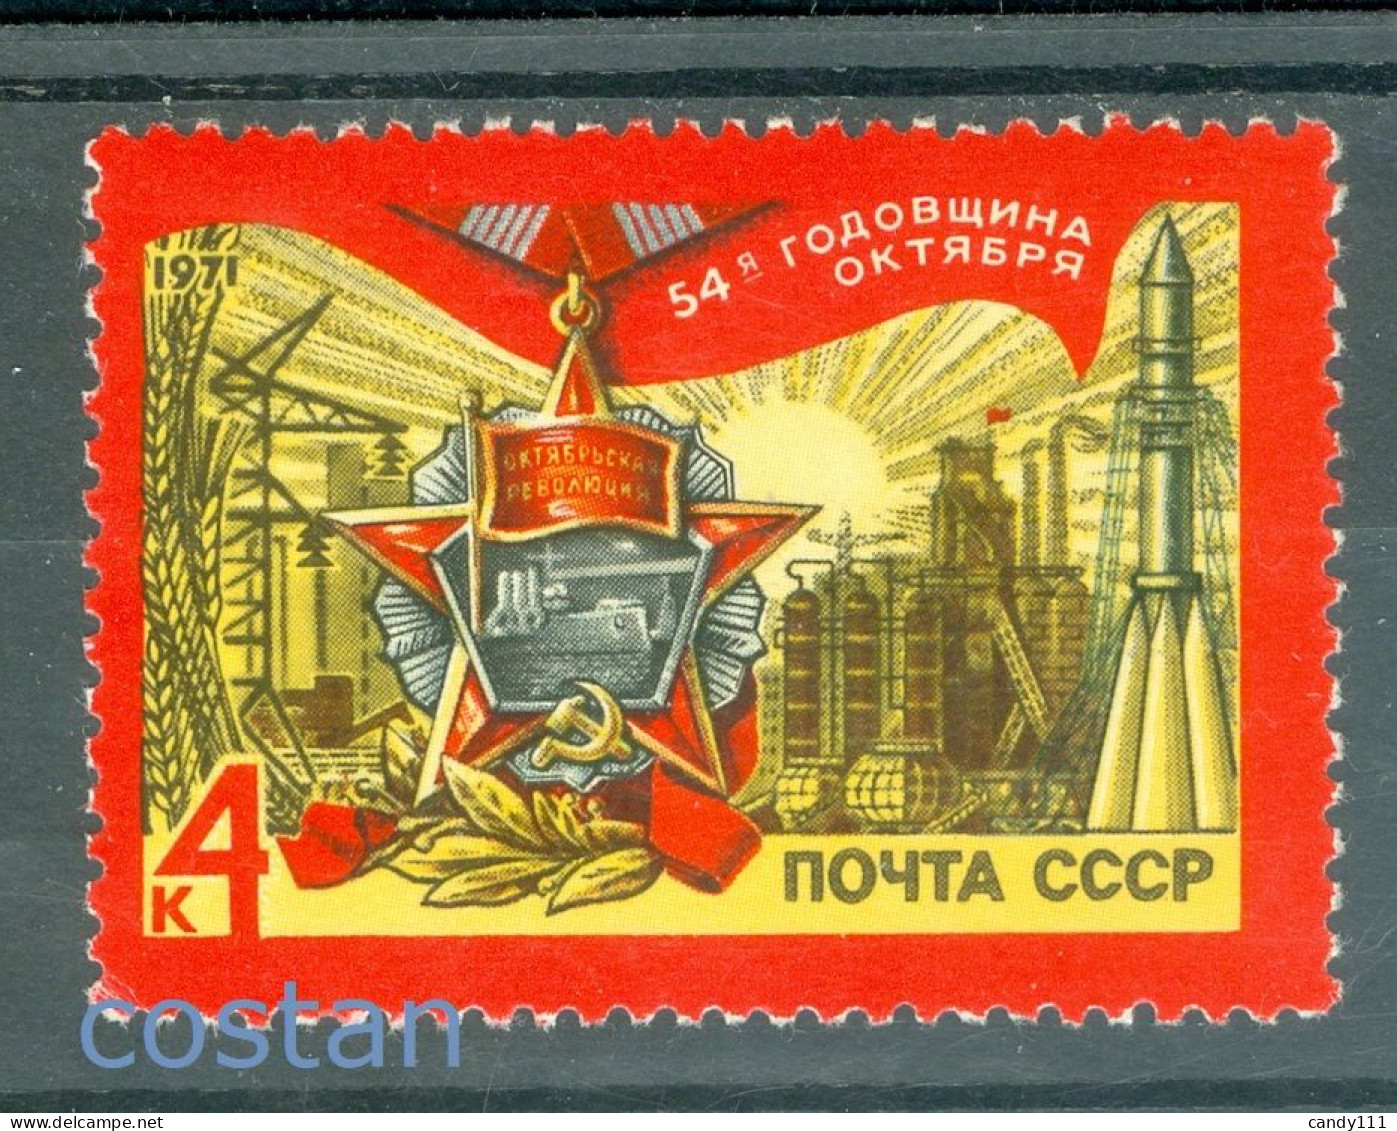 1971 October Revolution,Medal/Potemkin,Industry,Rocket,Power,Russia,3838,MNH - Neufs